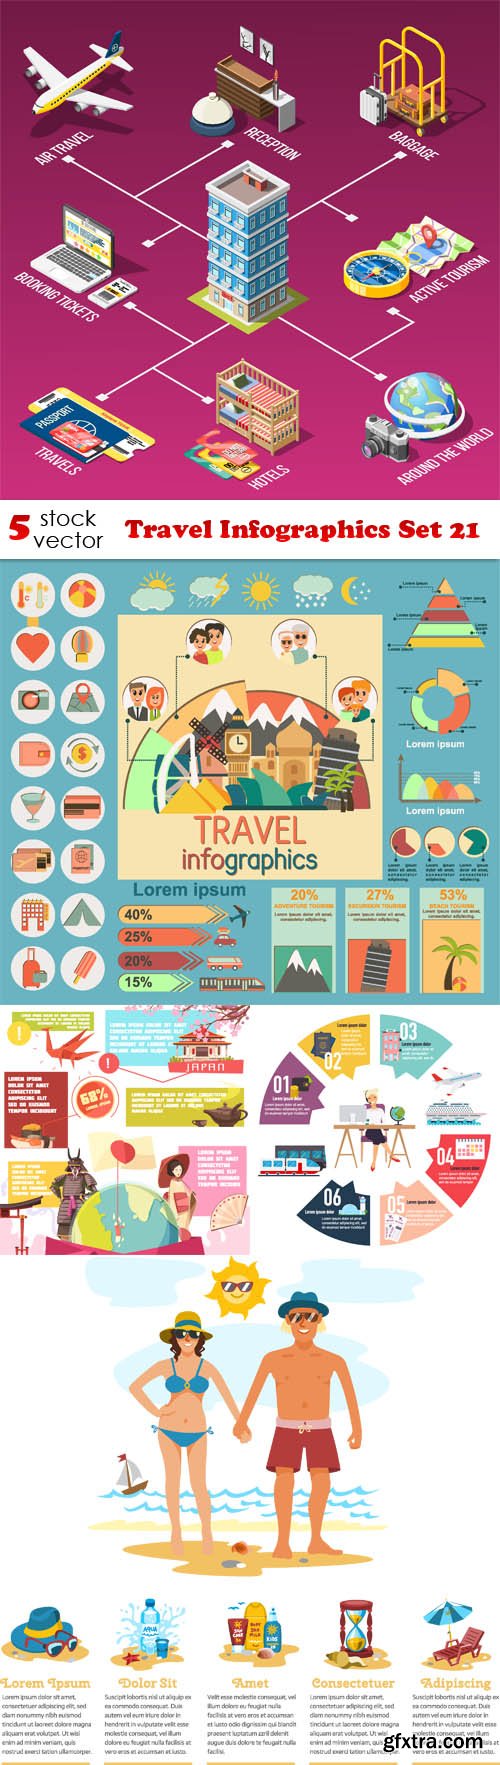 Vectors - Travel Infographics Set 21